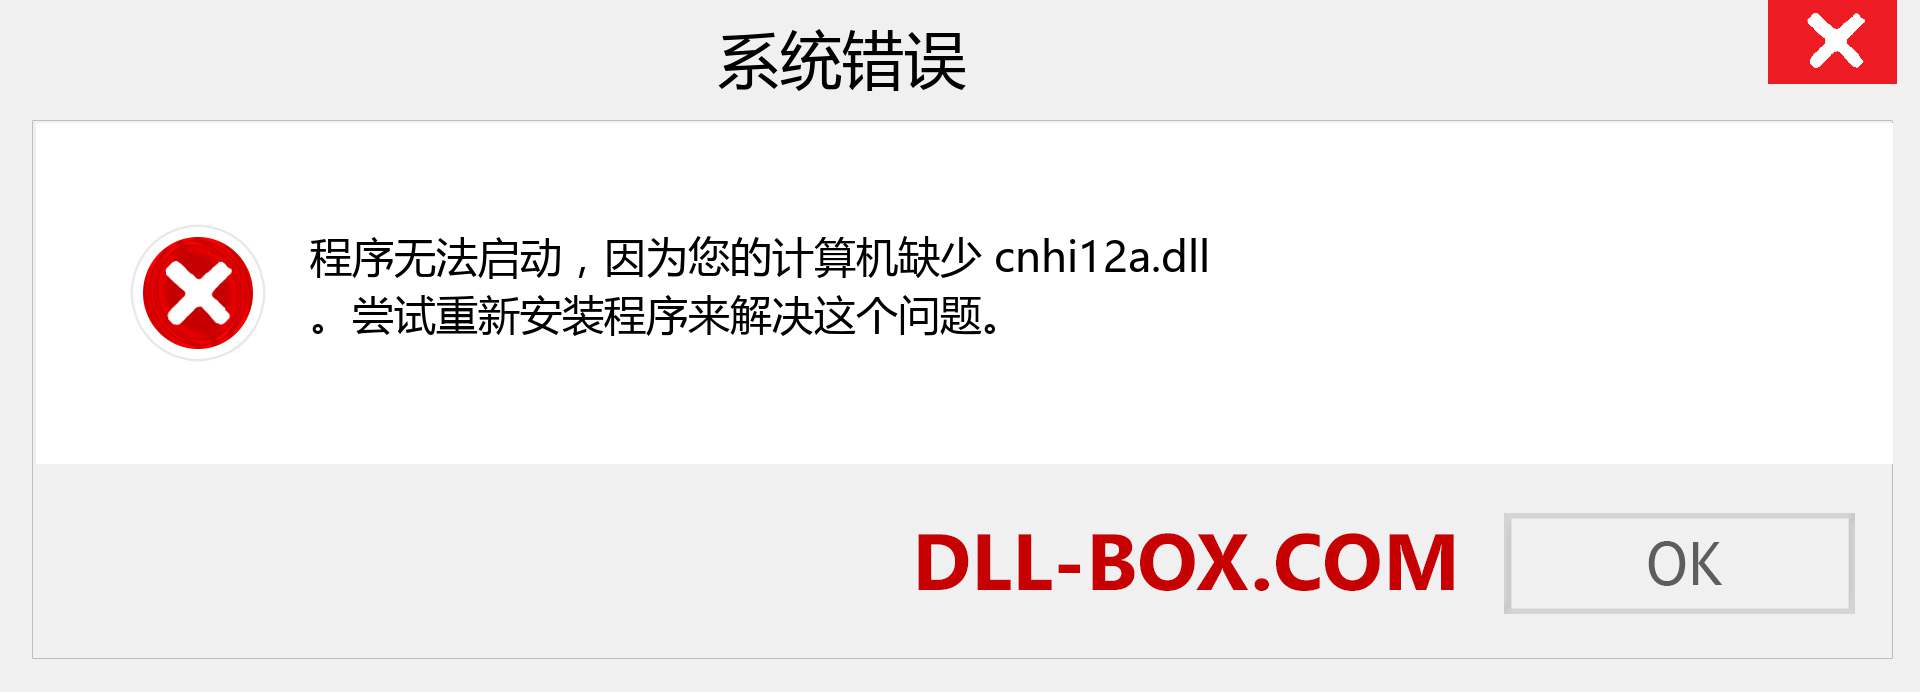 cnhi12a.dll 文件丢失？。 适用于 Windows 7、8、10 的下载 - 修复 Windows、照片、图像上的 cnhi12a dll 丢失错误